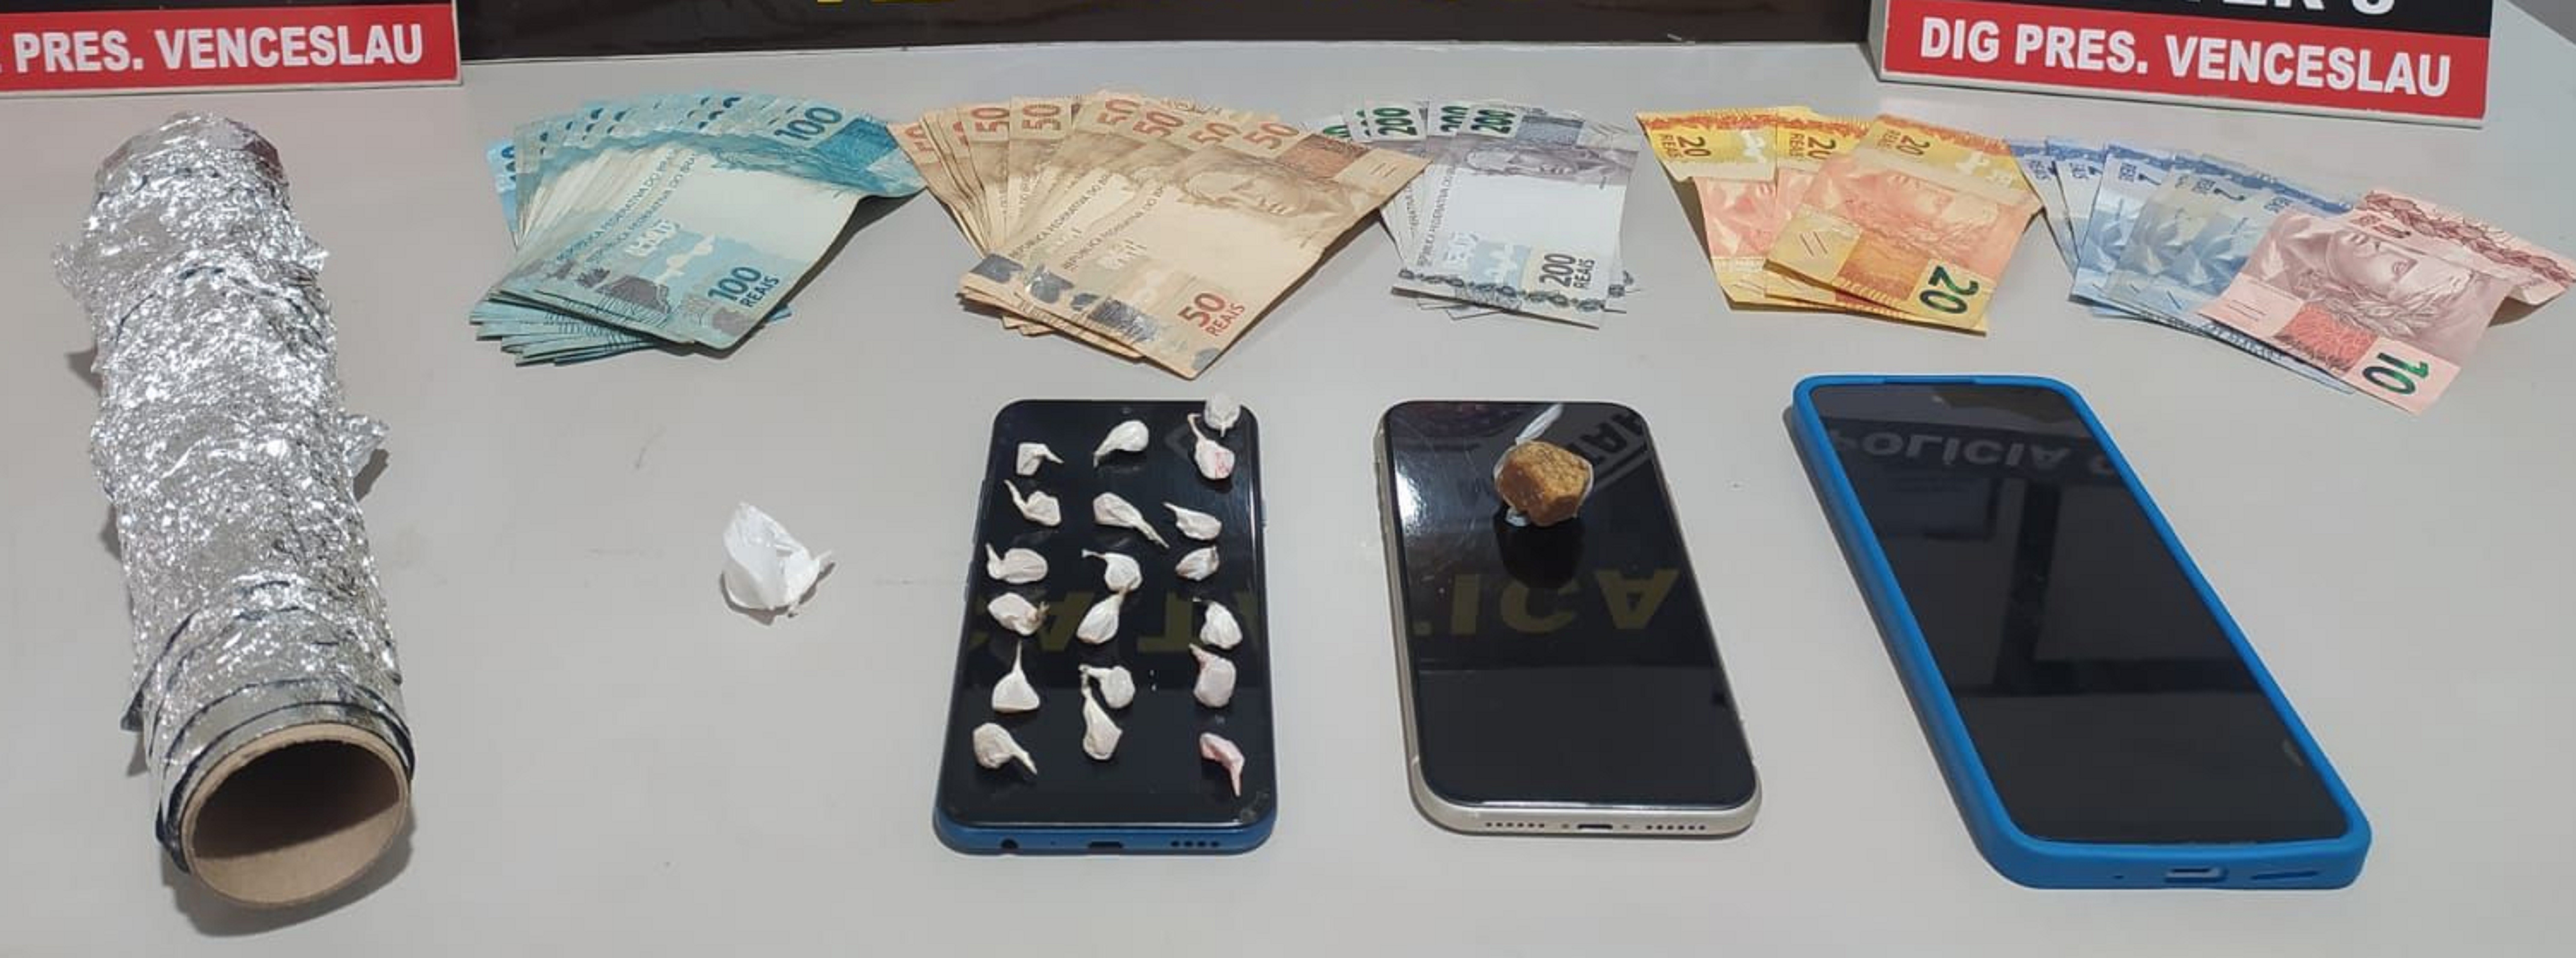 Durante operação policial, casal é preso após ser flagrado com 20 pedras de crack e R$ 5 mil em Presidente Venceslau